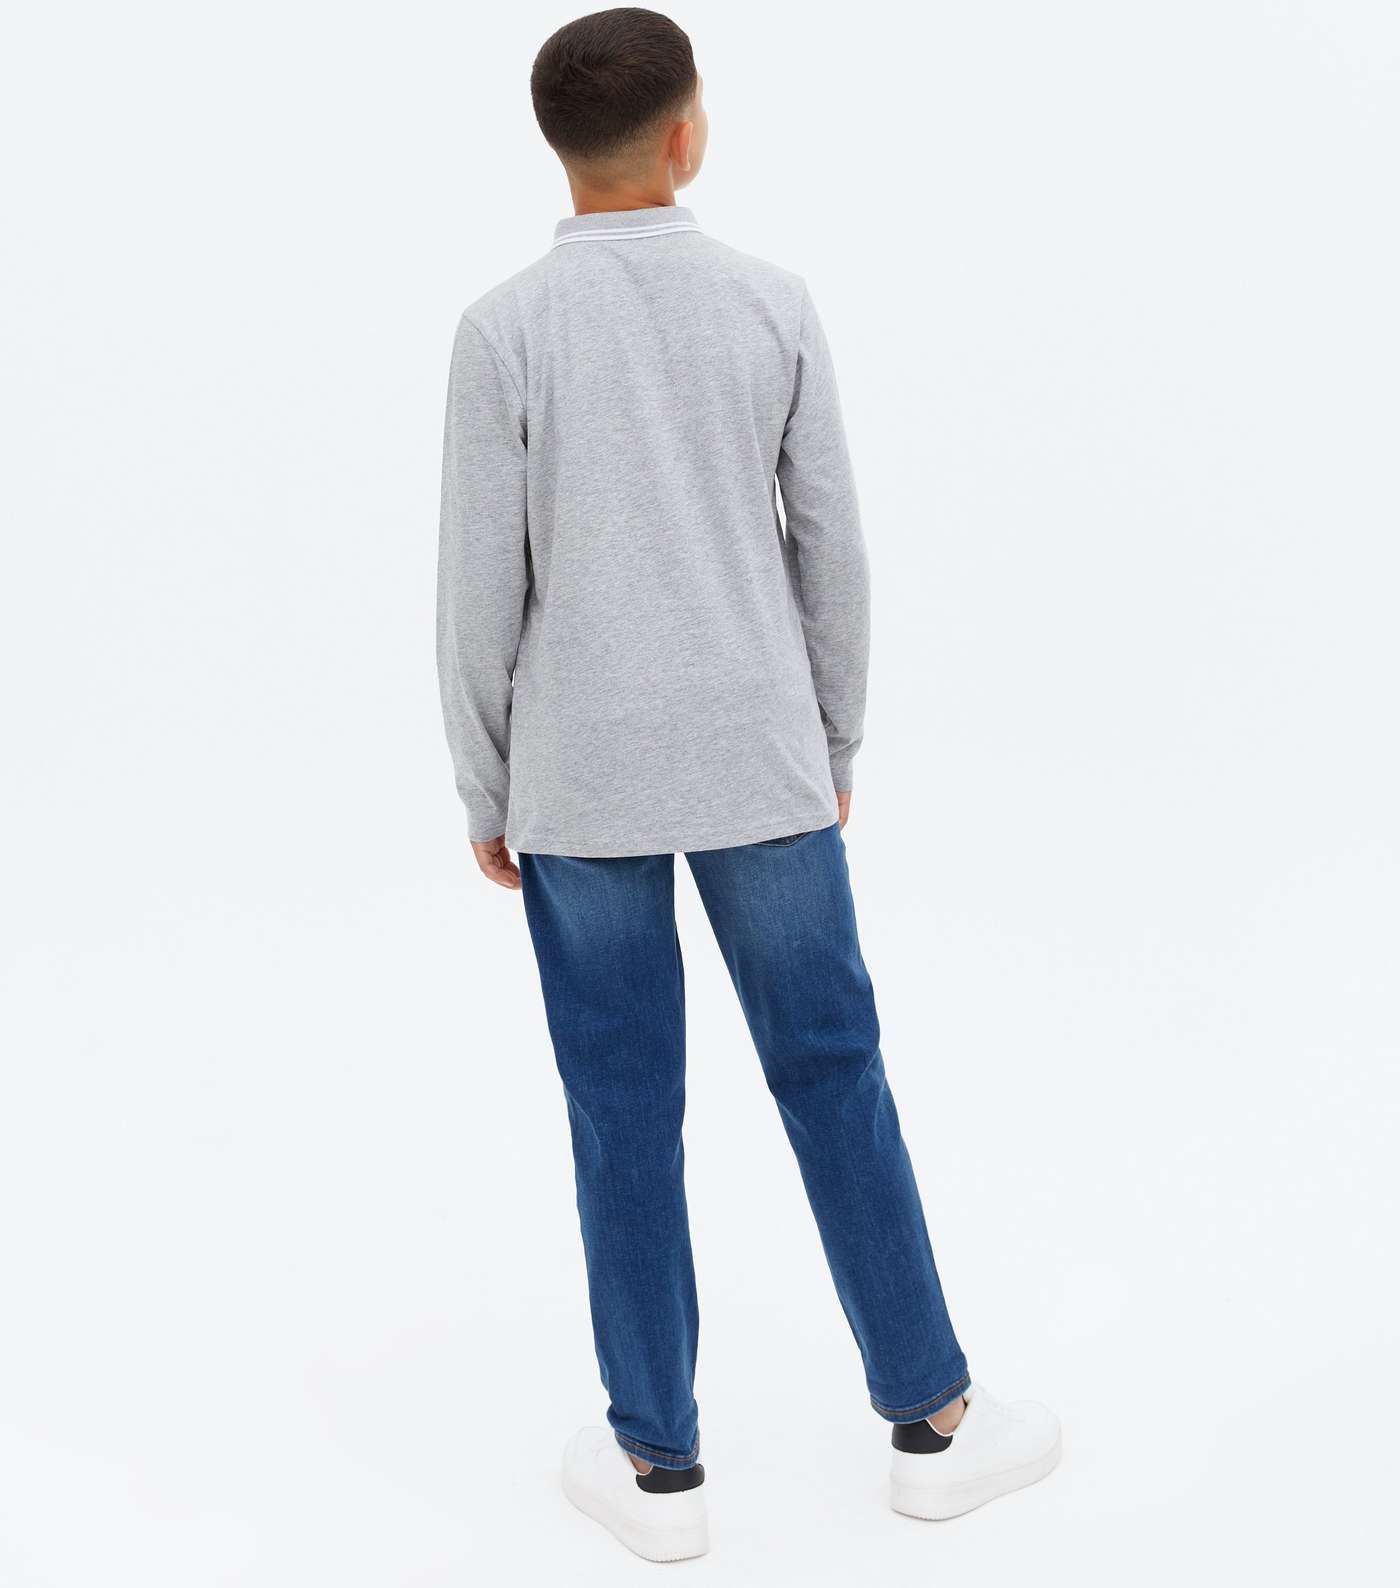 Boys Grey Embroidered Long Sleeve Polo Shirt Image 4